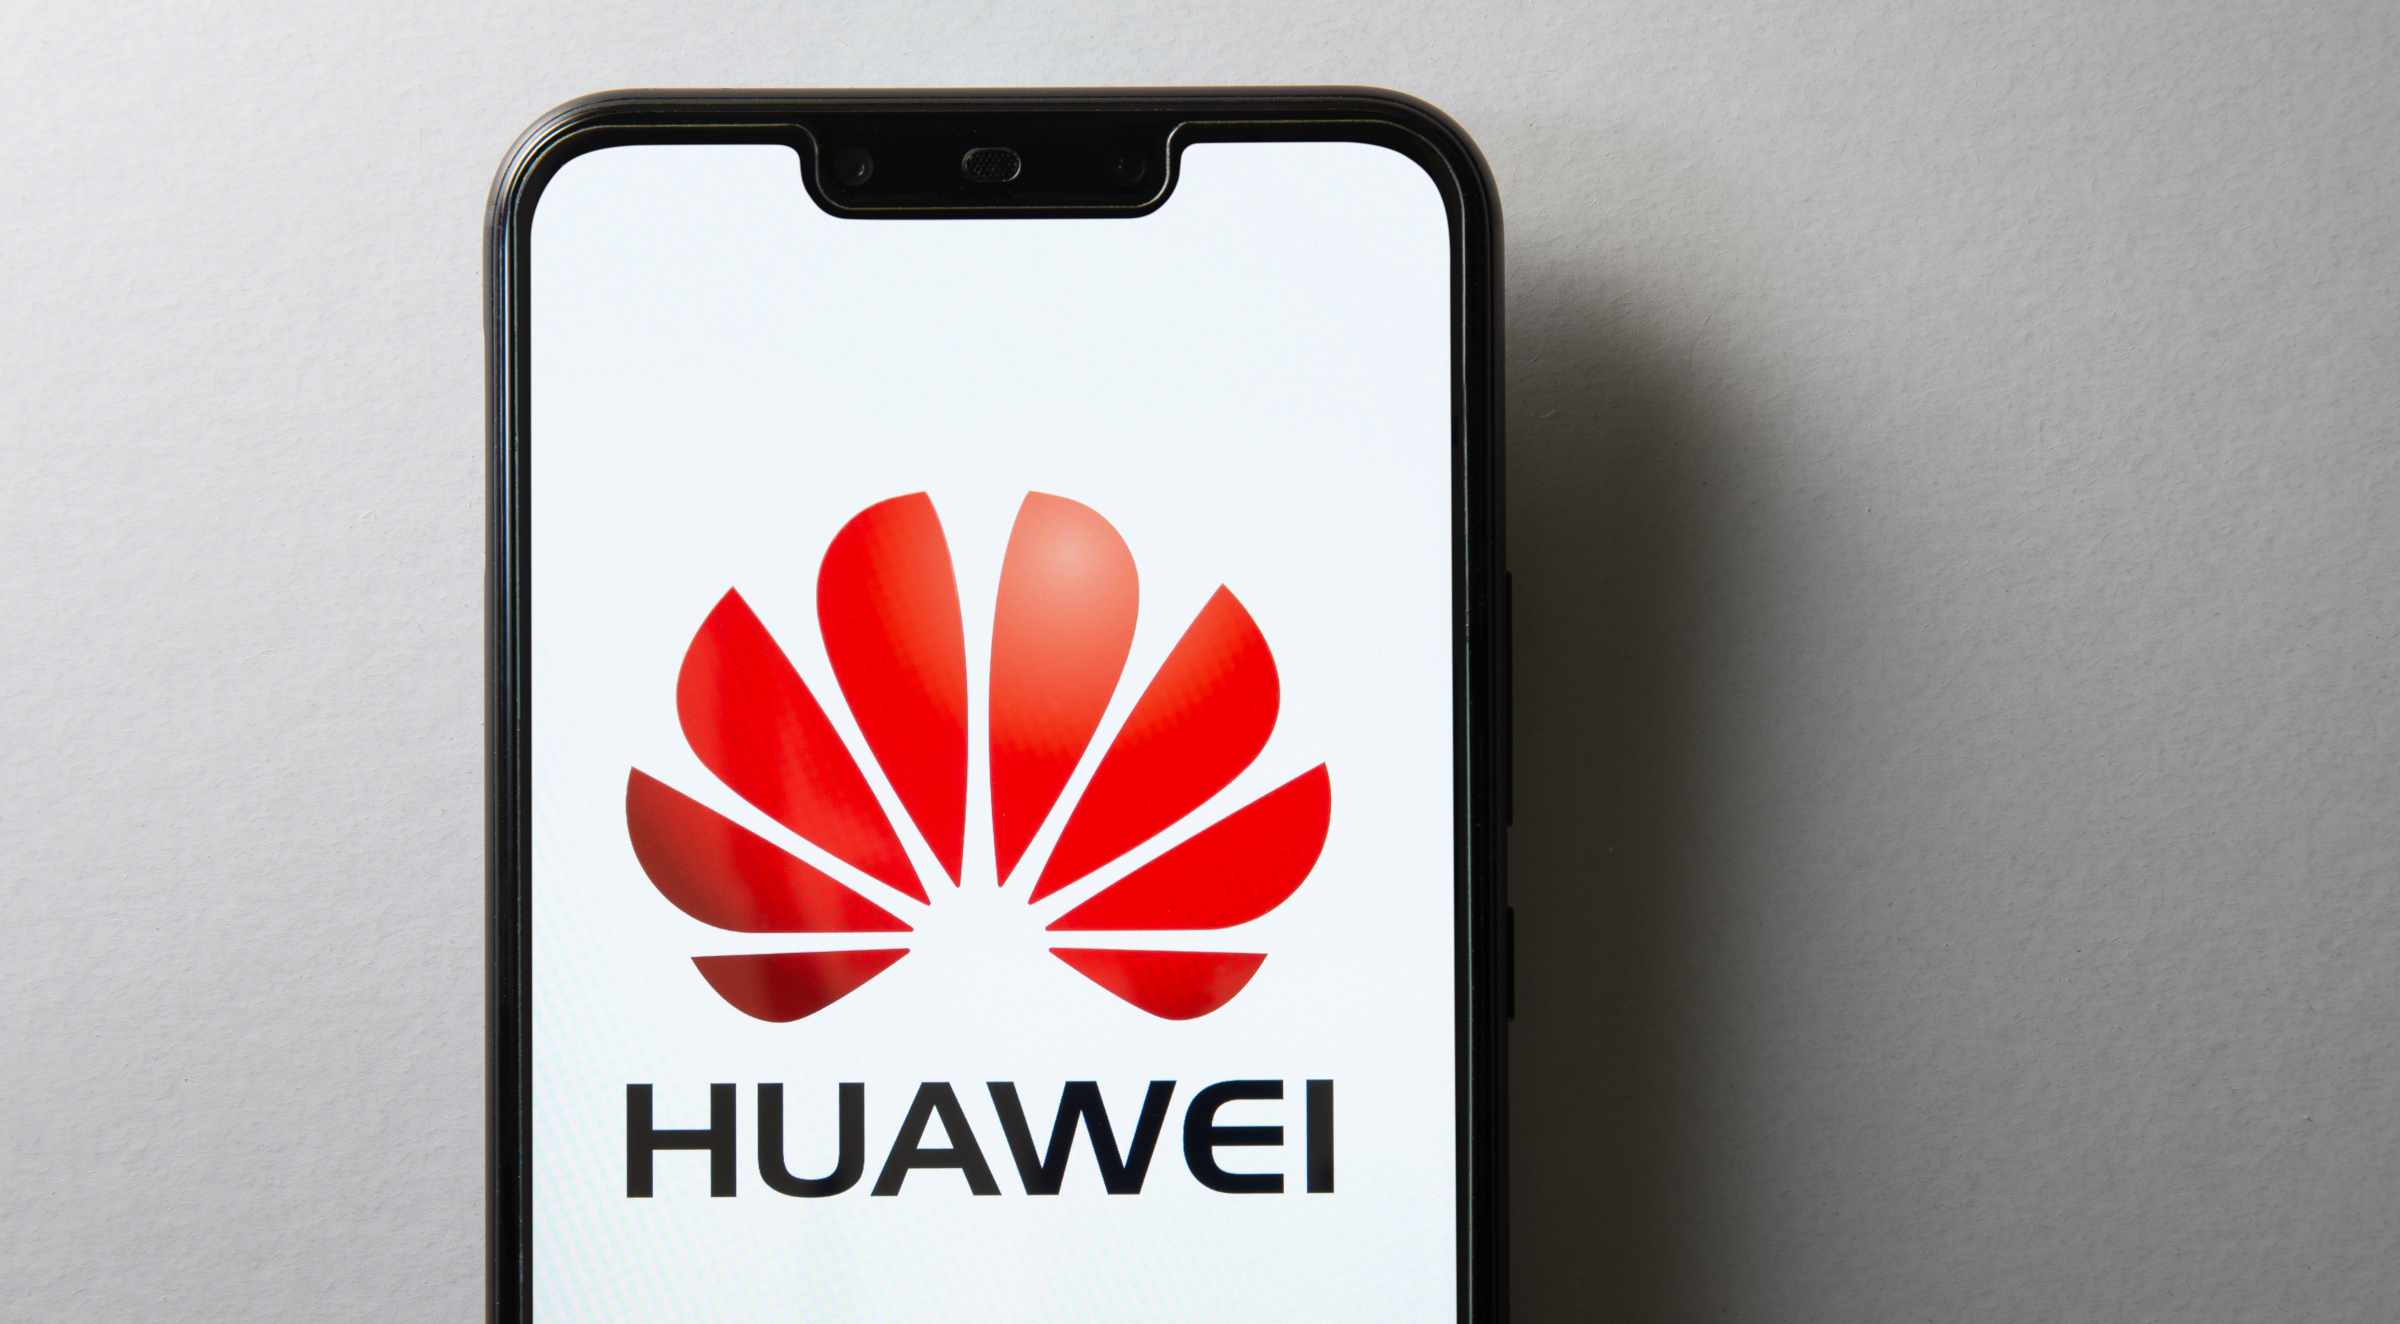 Noche de ofertas flash en productos Huawei: móviles 5G, portátiles